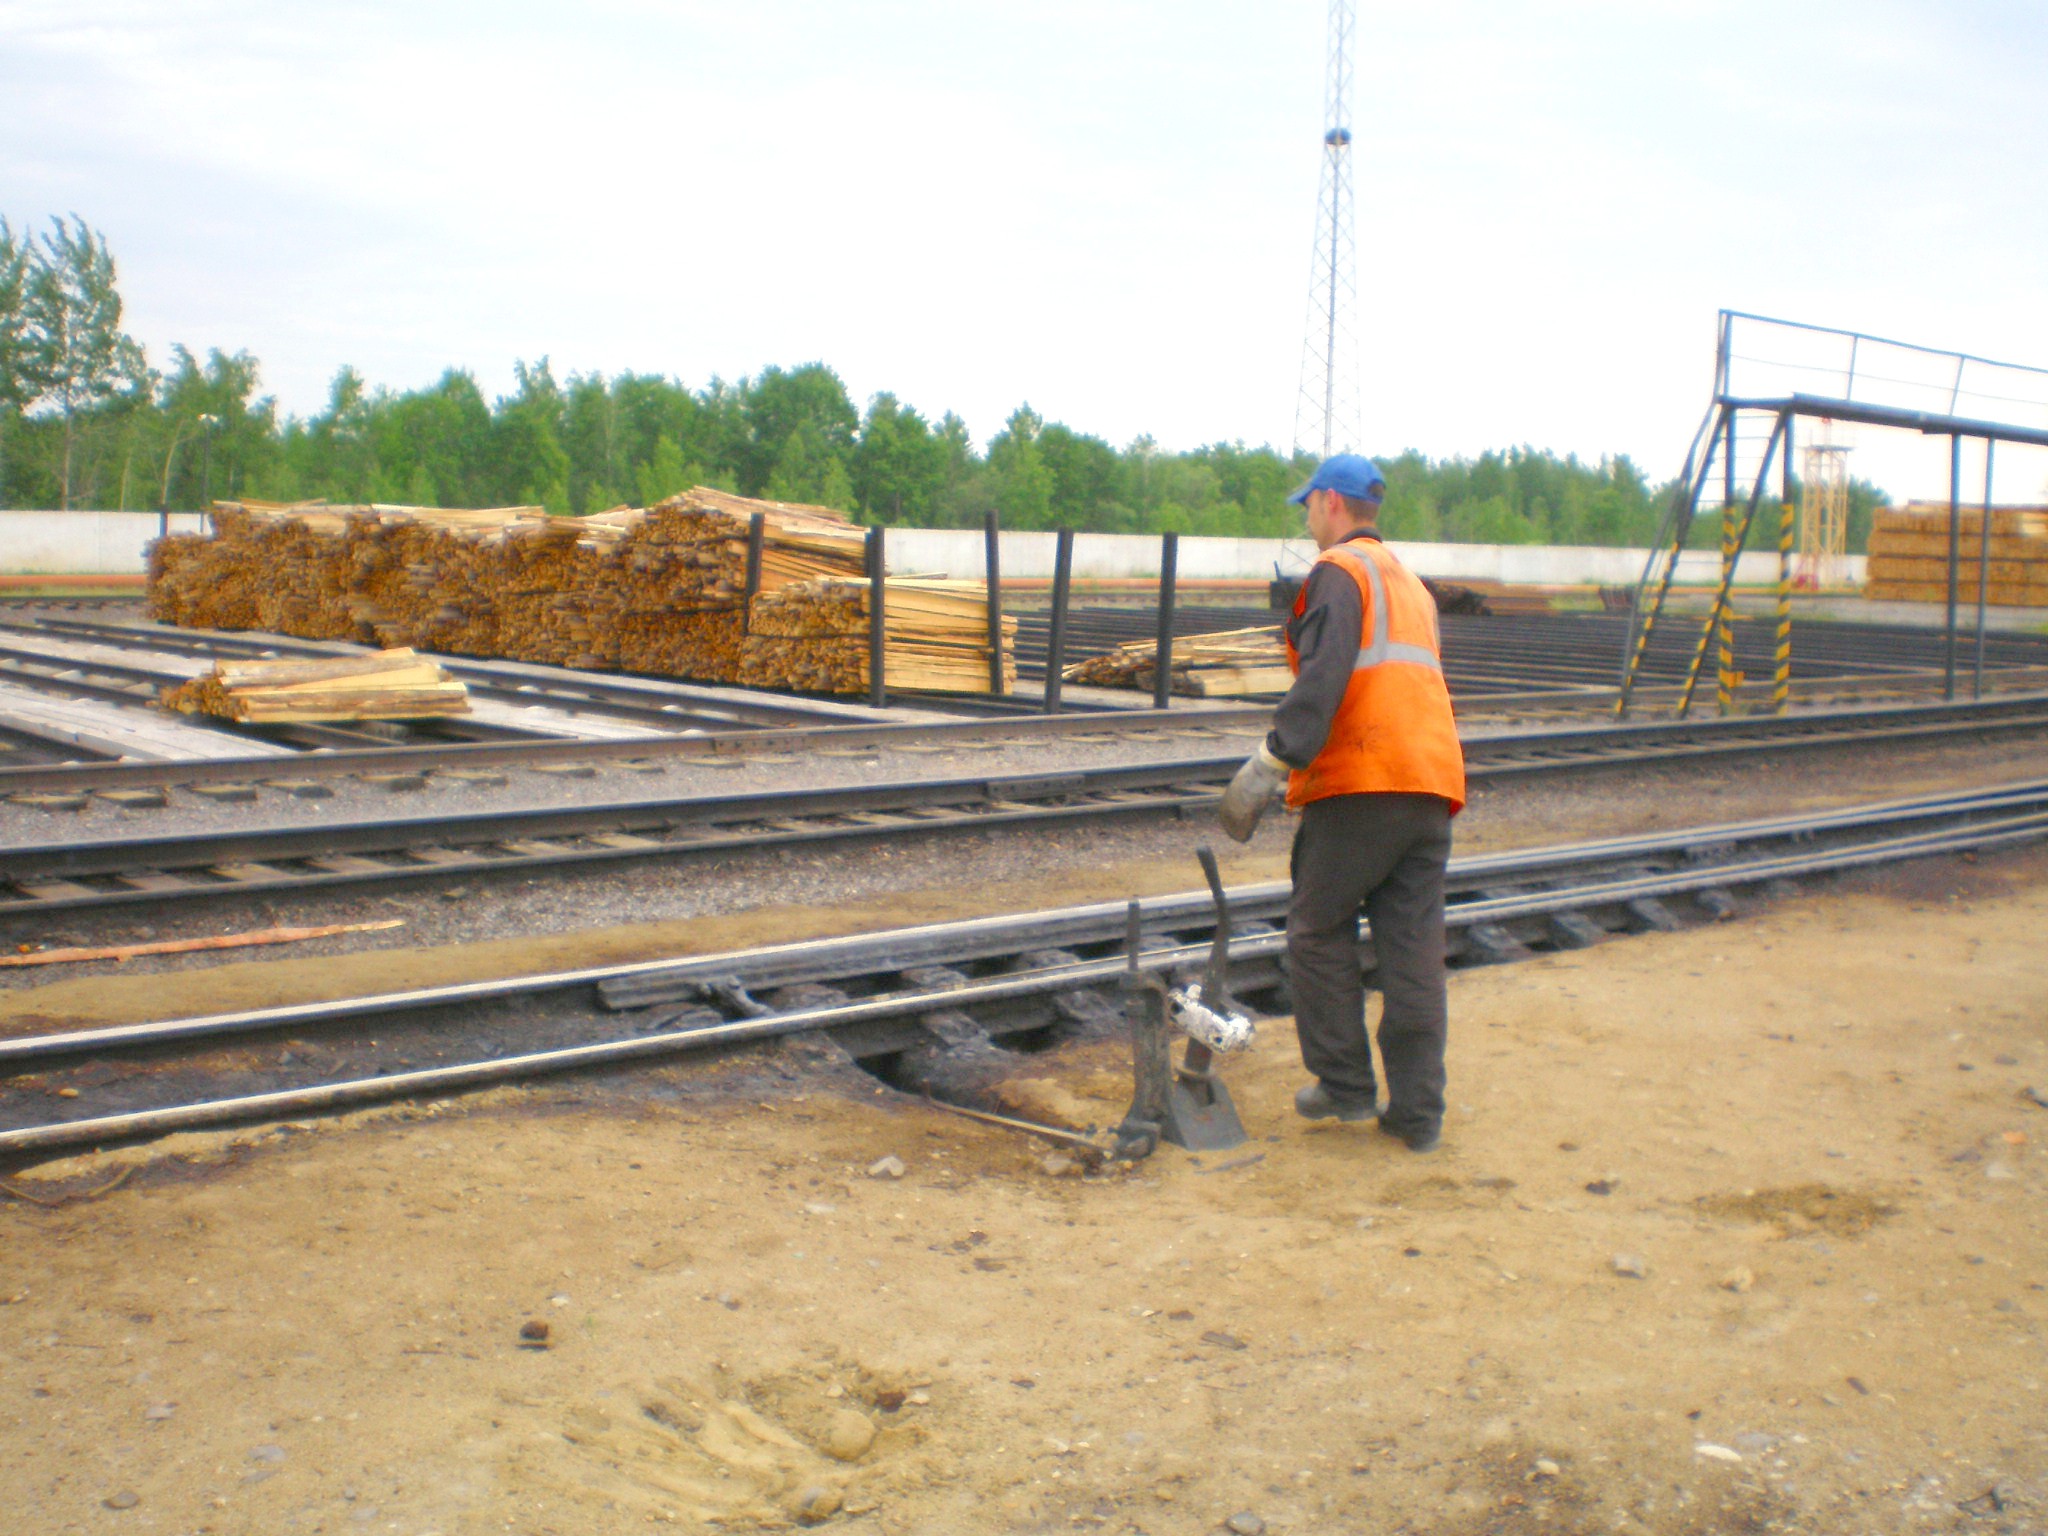 Узкоколейная железная дорога Аурского шпалопропиточного завода  — фотографии, сделанные в 2008 году (часть 2)